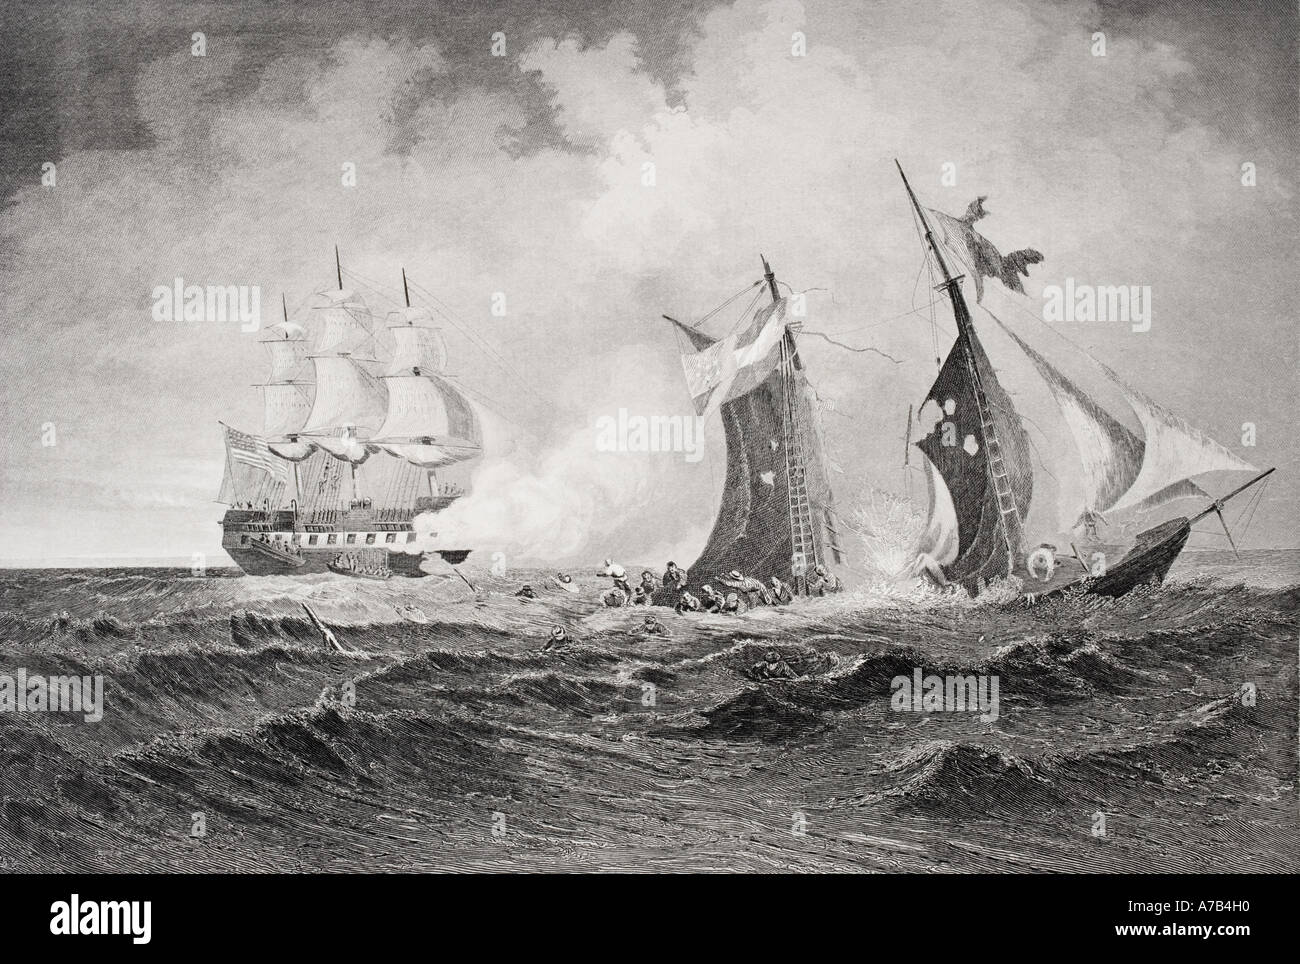 Distruzione del corsaro Petrel da St Lawrence durante la Guerra Civile Americana, 1861. Artista Paolo Manzoni. Foto Stock